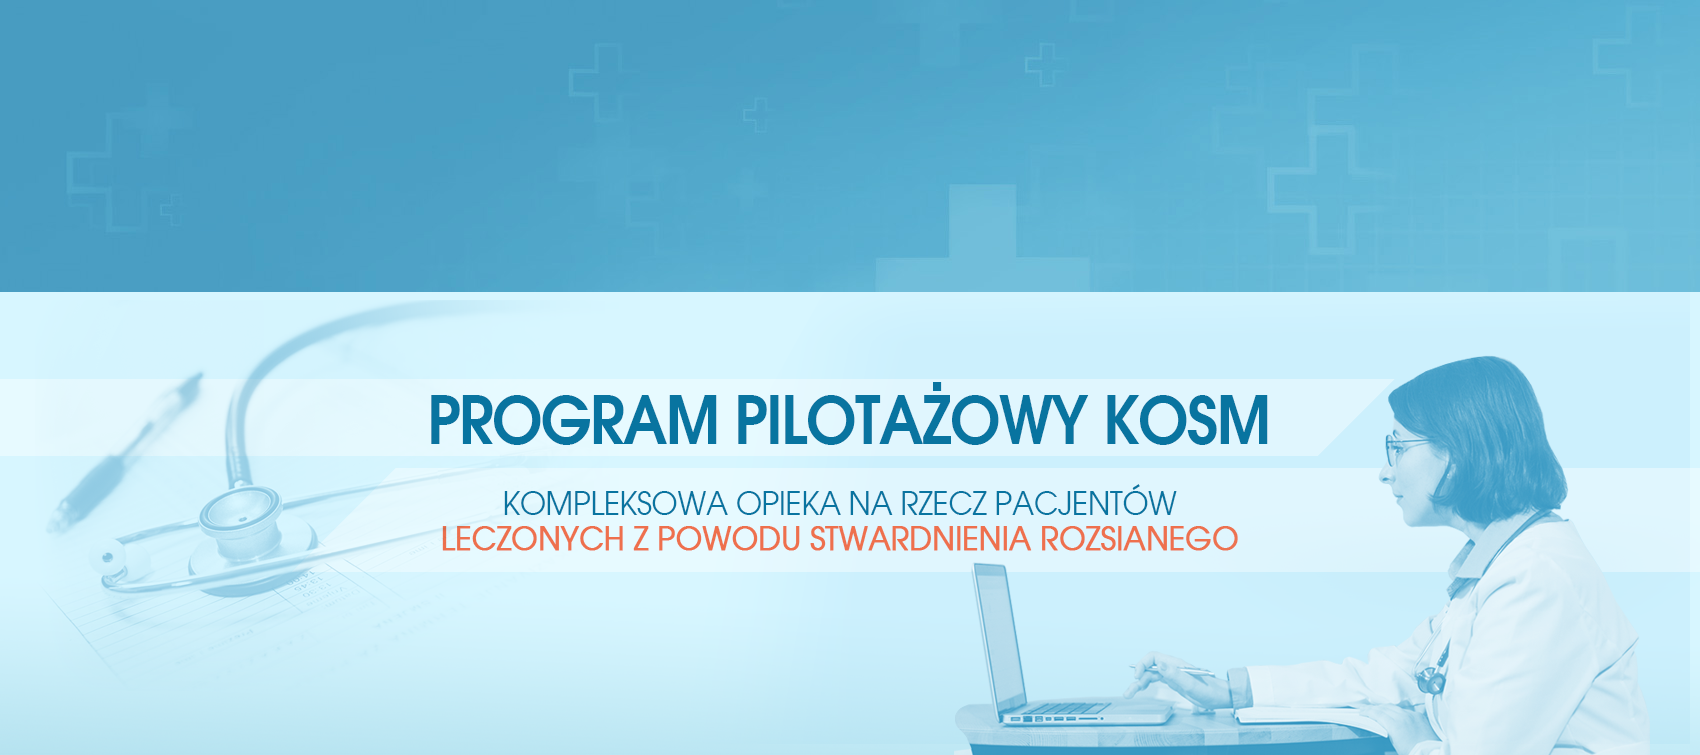 Slider informujący o programie pilotażowym KOSM